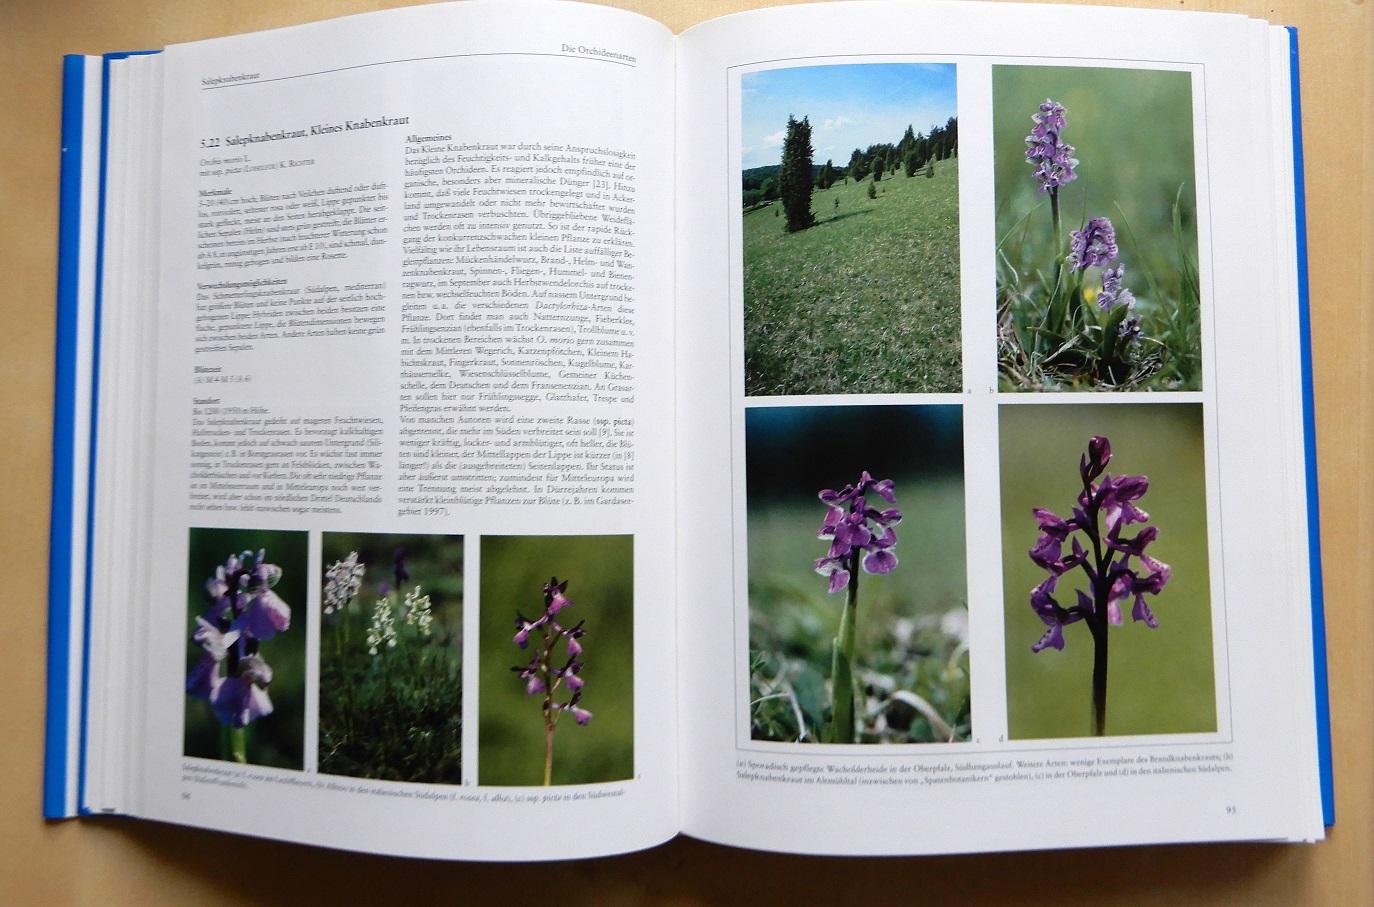 Presser, Helmut - Orchideen Die Orchideen Mitteleuropas und der Alpen